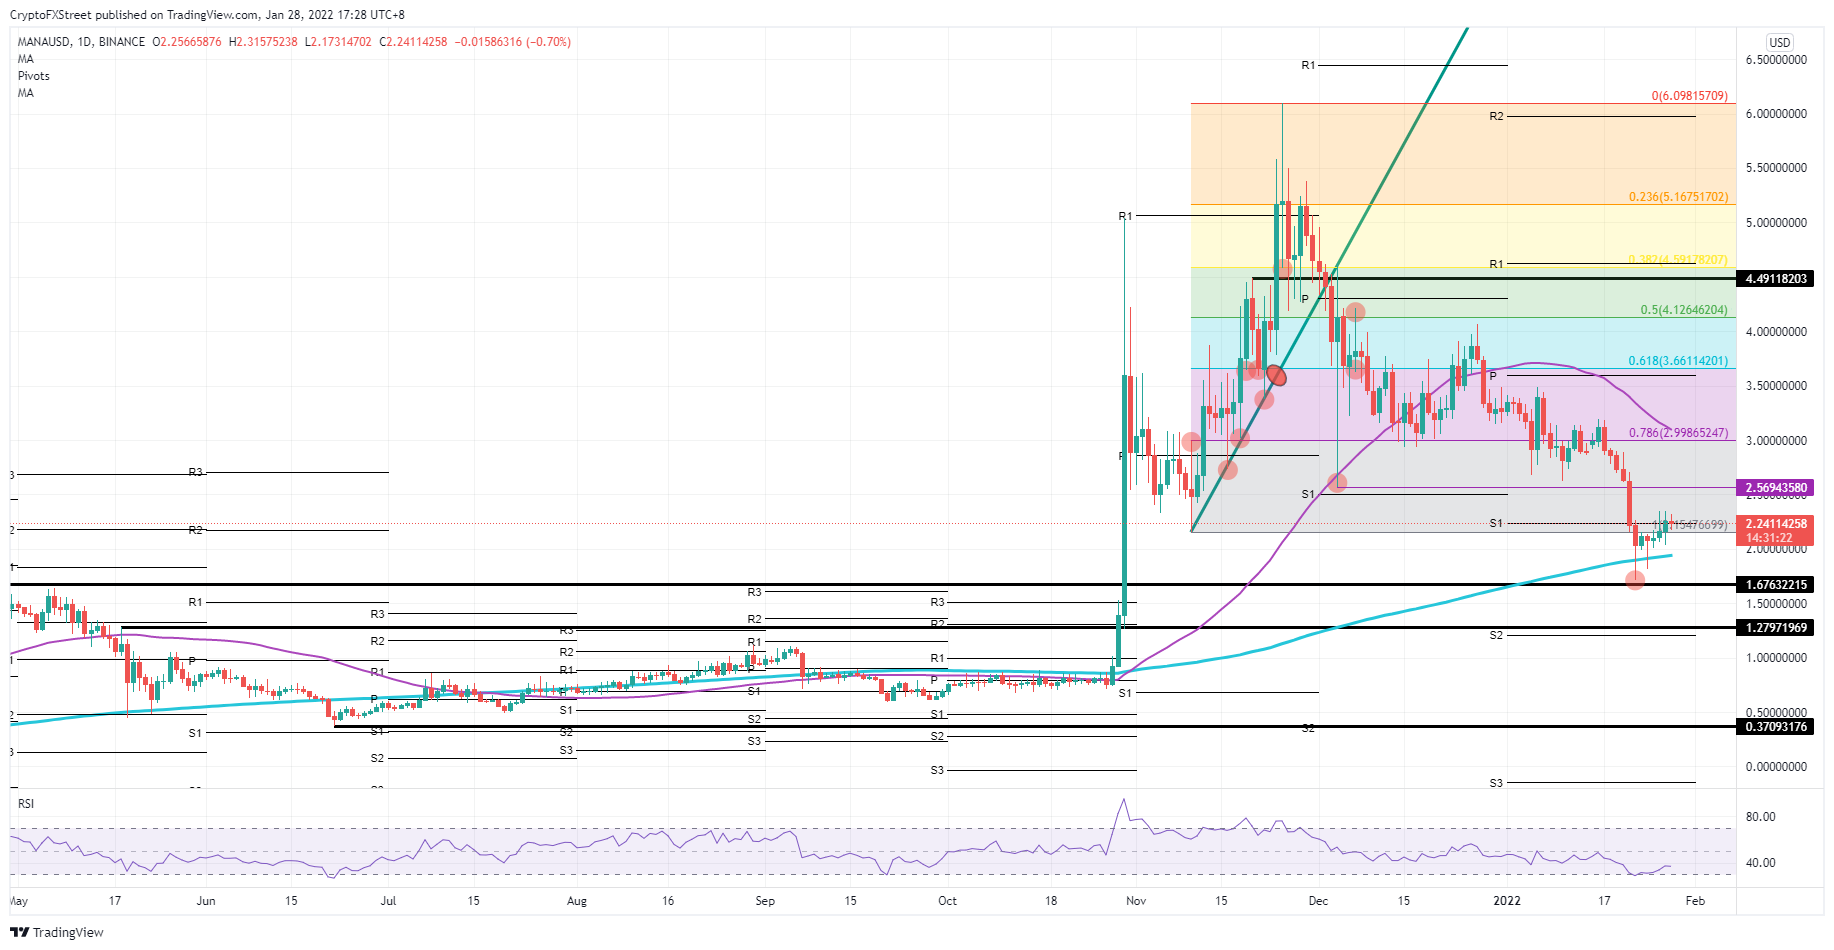 MANA/USD daily chart